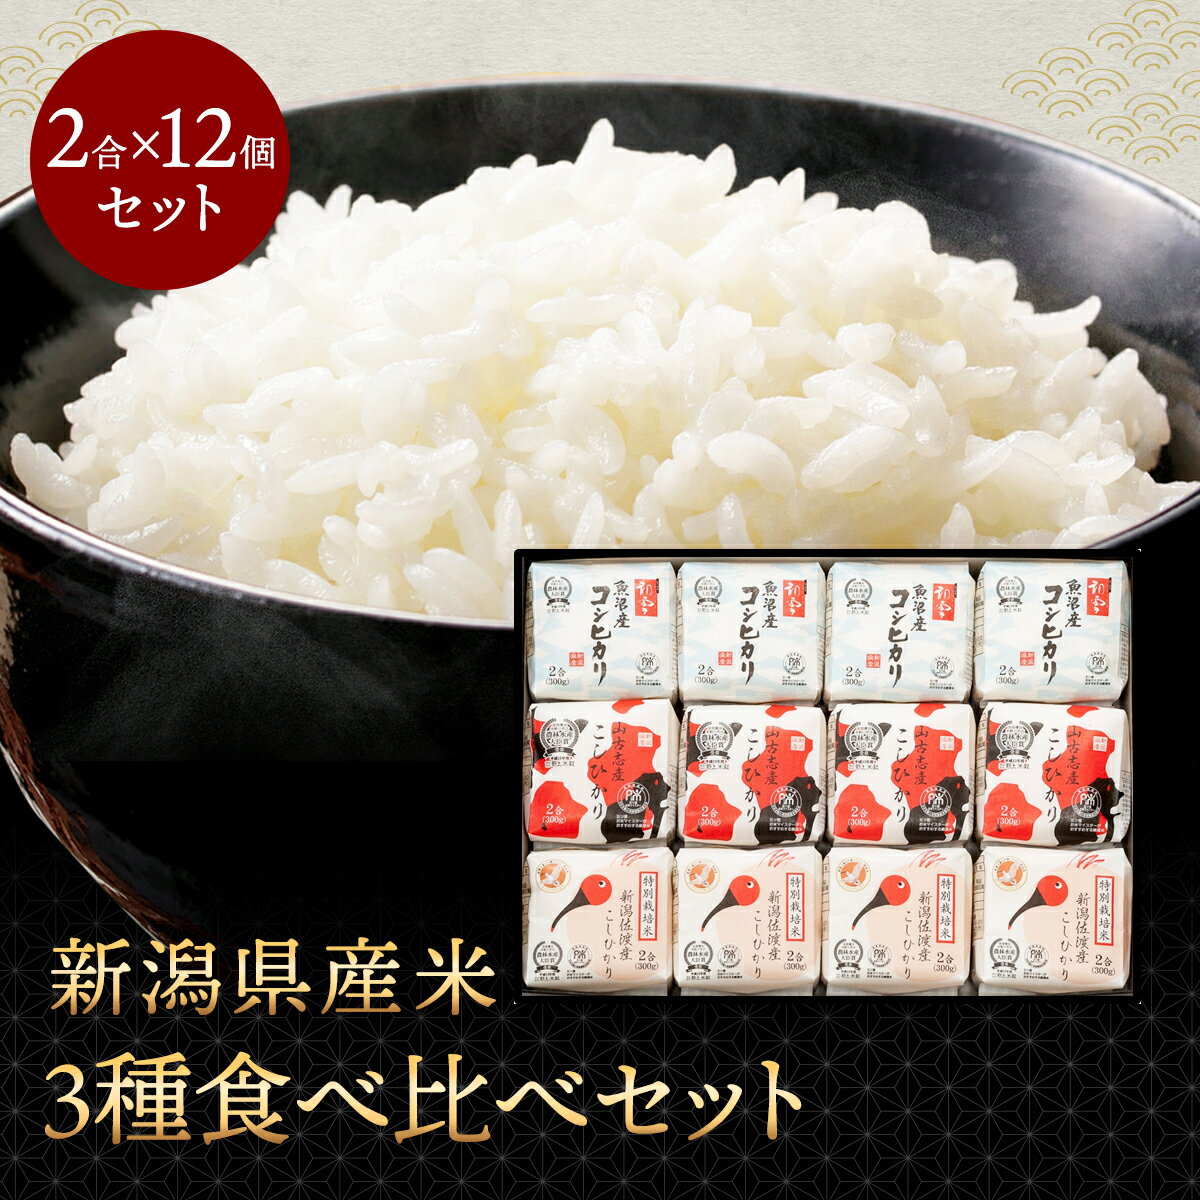 【マラソン期間中ポイント5倍】 新潟県産米3種食...の商品画像